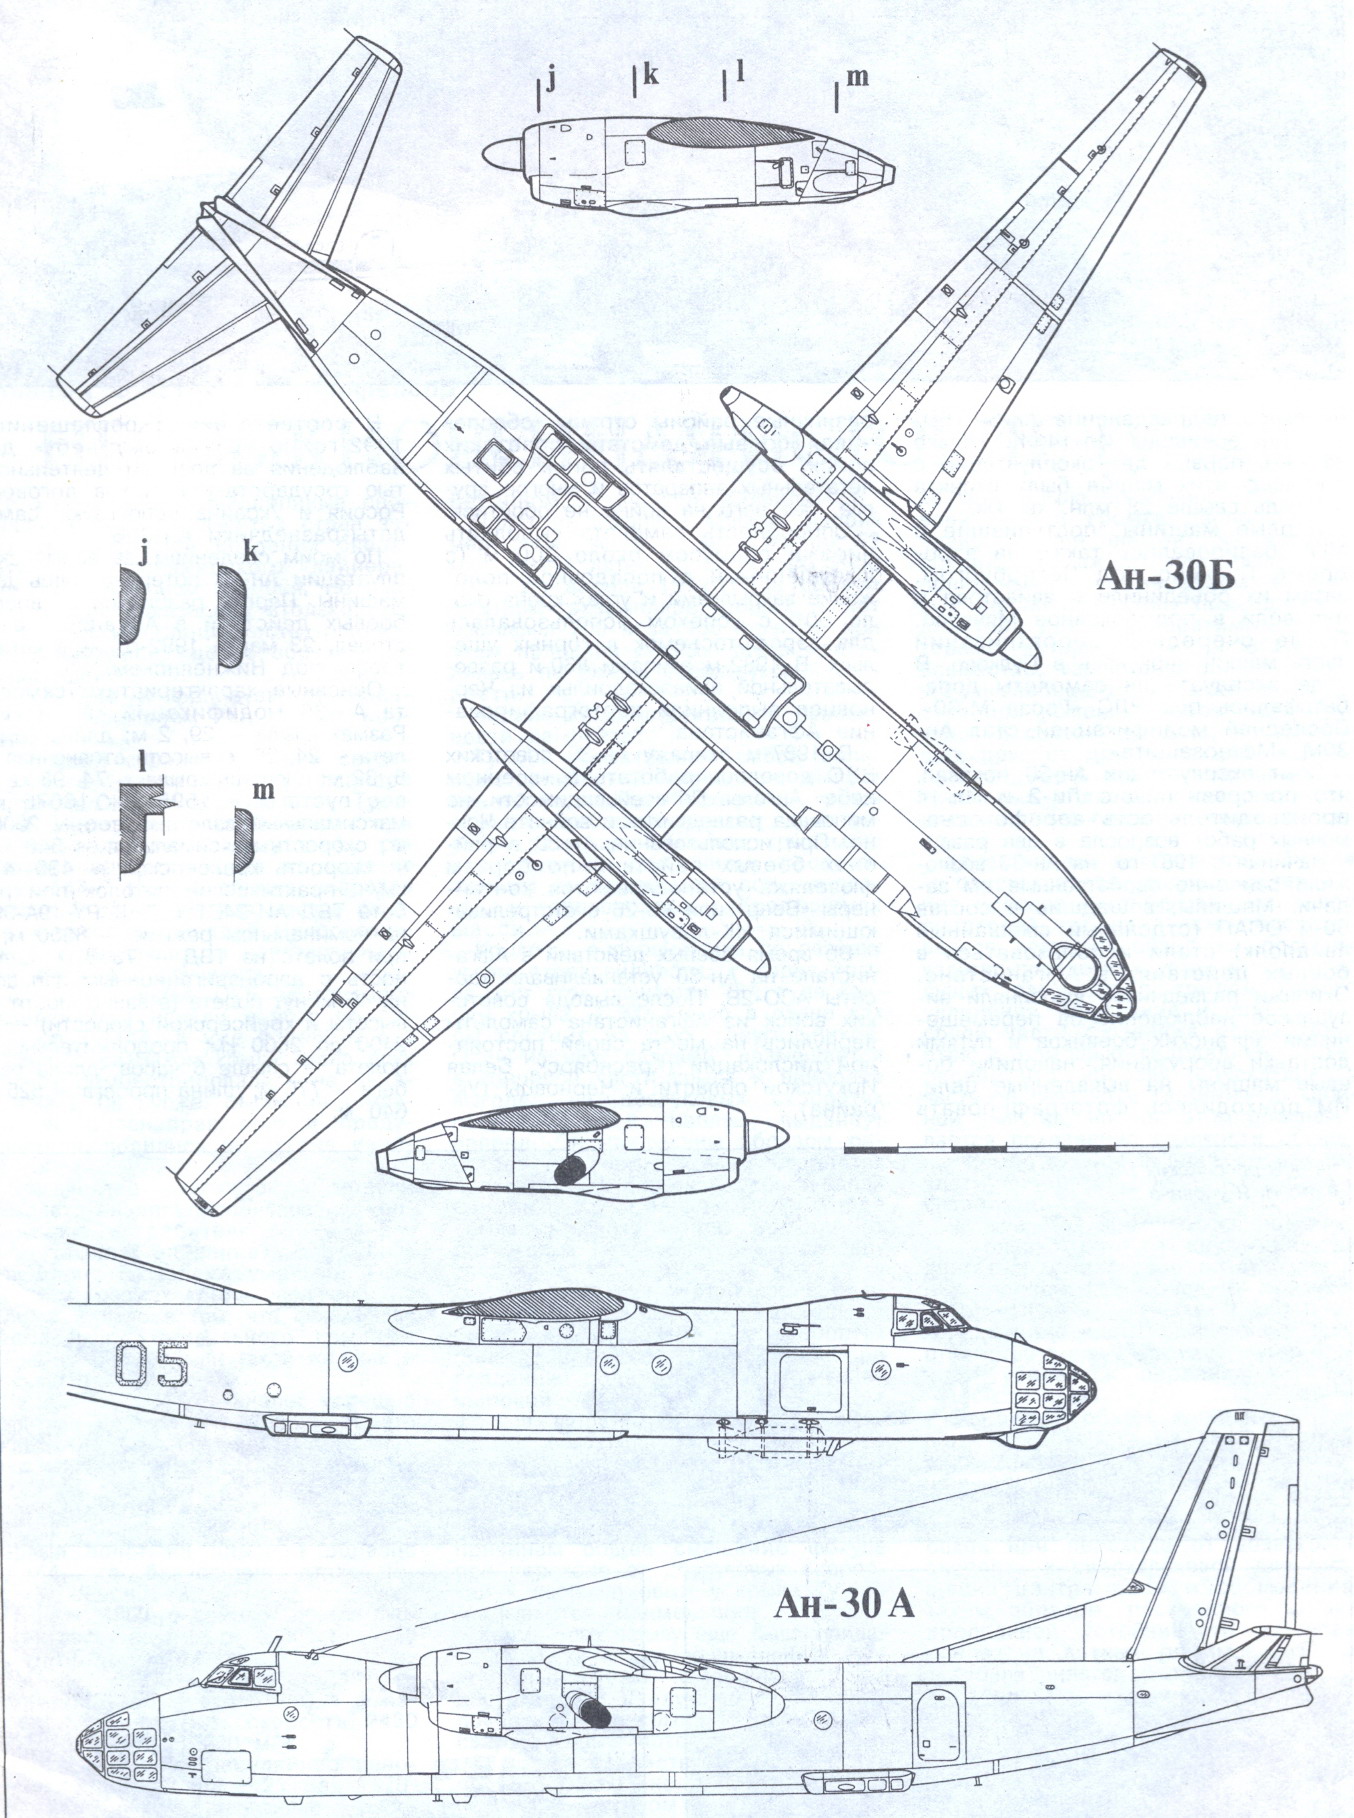 An-30 blueprint